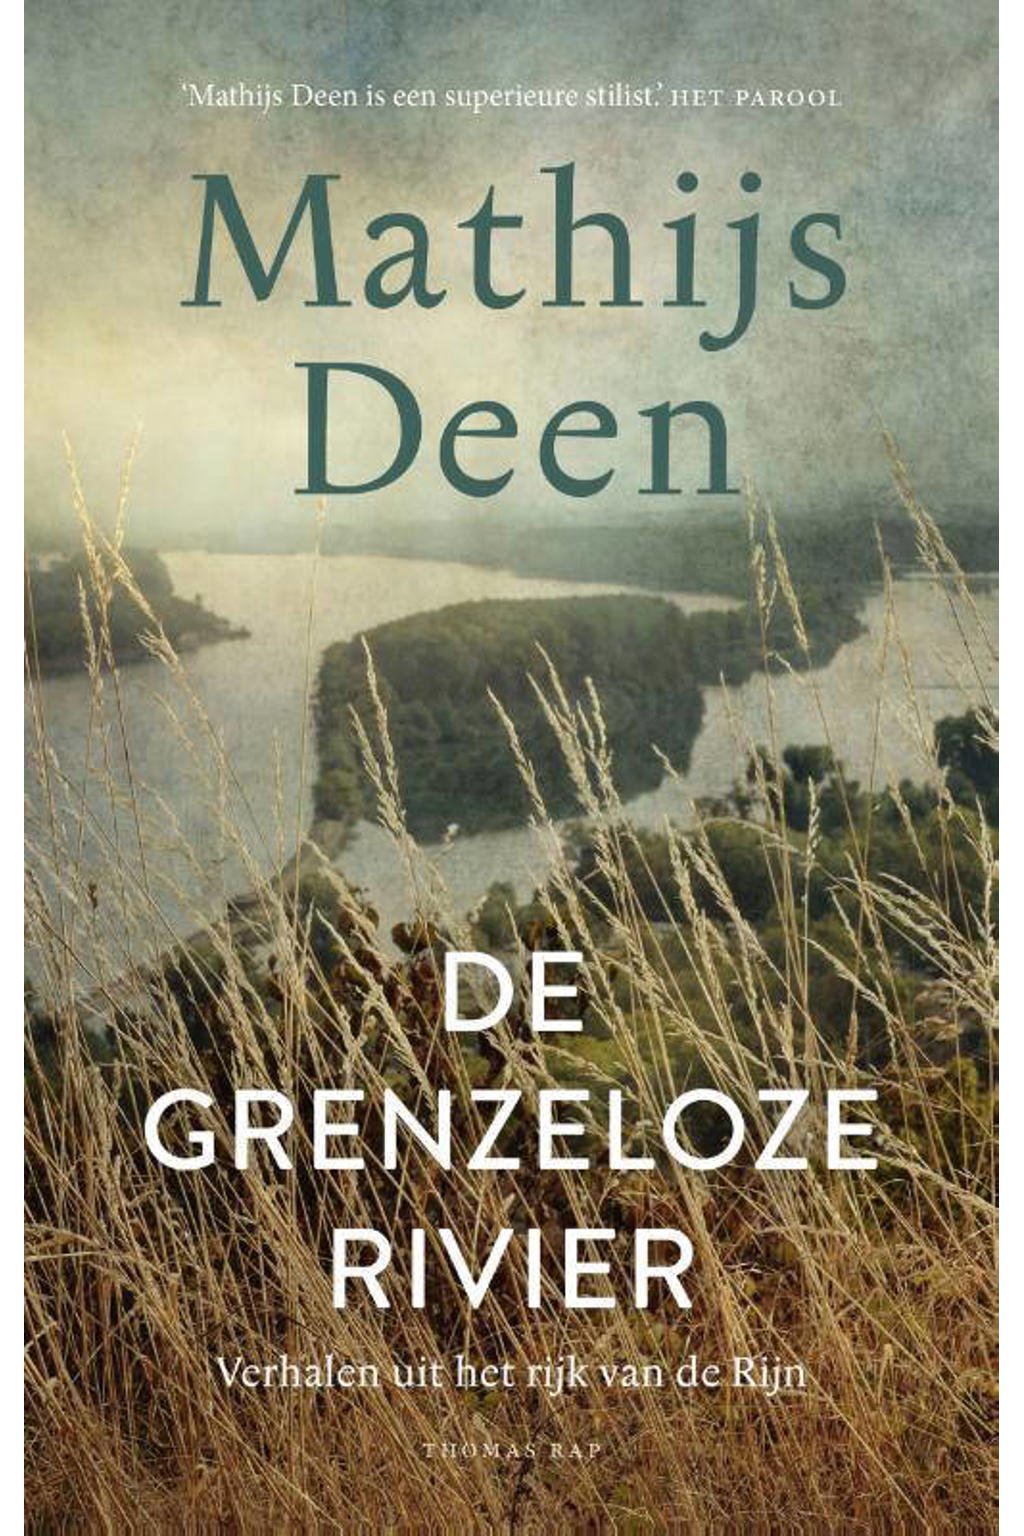 De grenzeloze rivier - Mathijs Deen